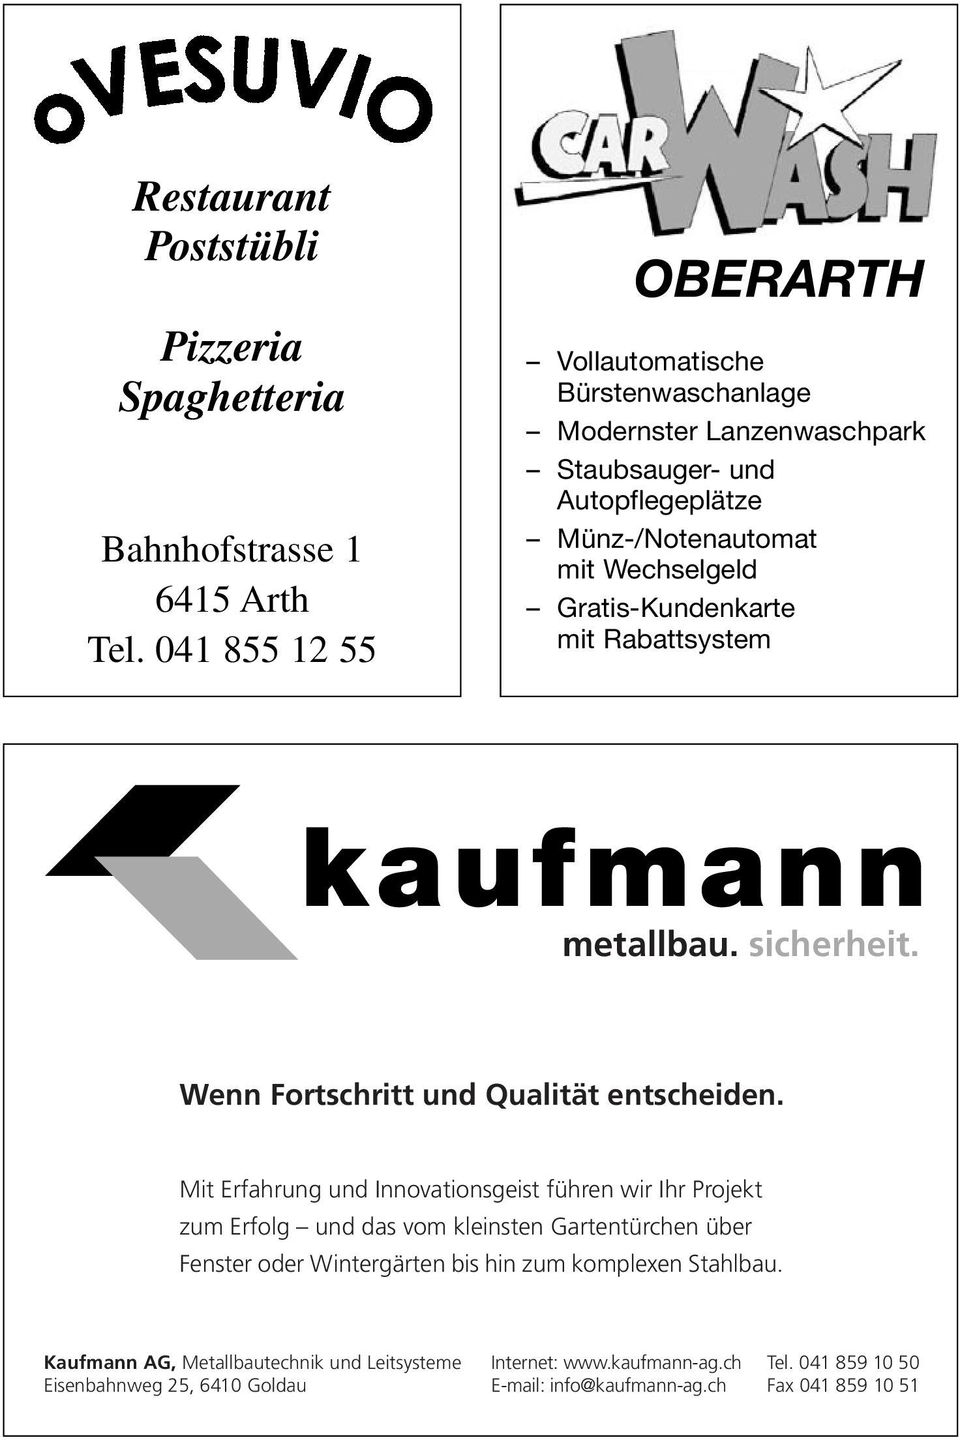 Gratis-Kundenkarte mit Rabattsystem kaufmann metallbau. sicherheit. Wenn Fortschritt und Qualität entscheiden.